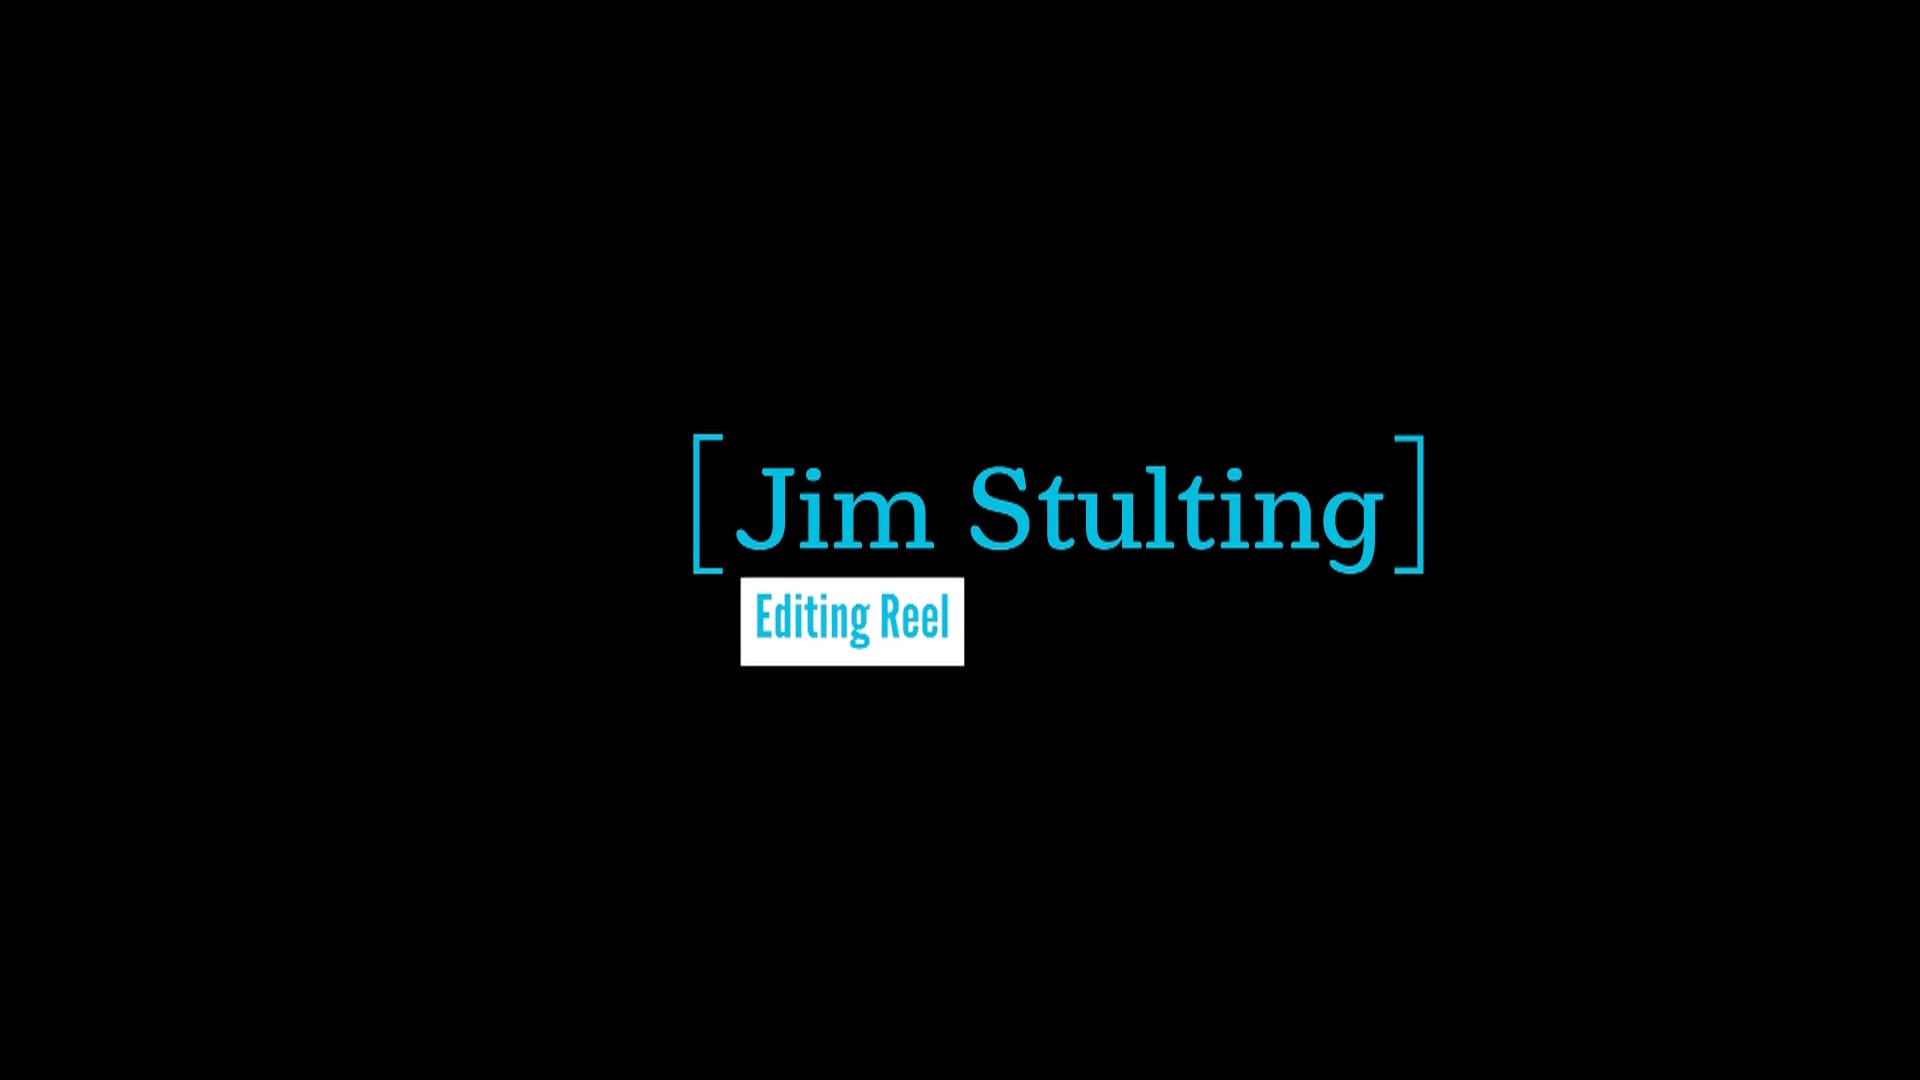 Jim Stulting - Editing Reel